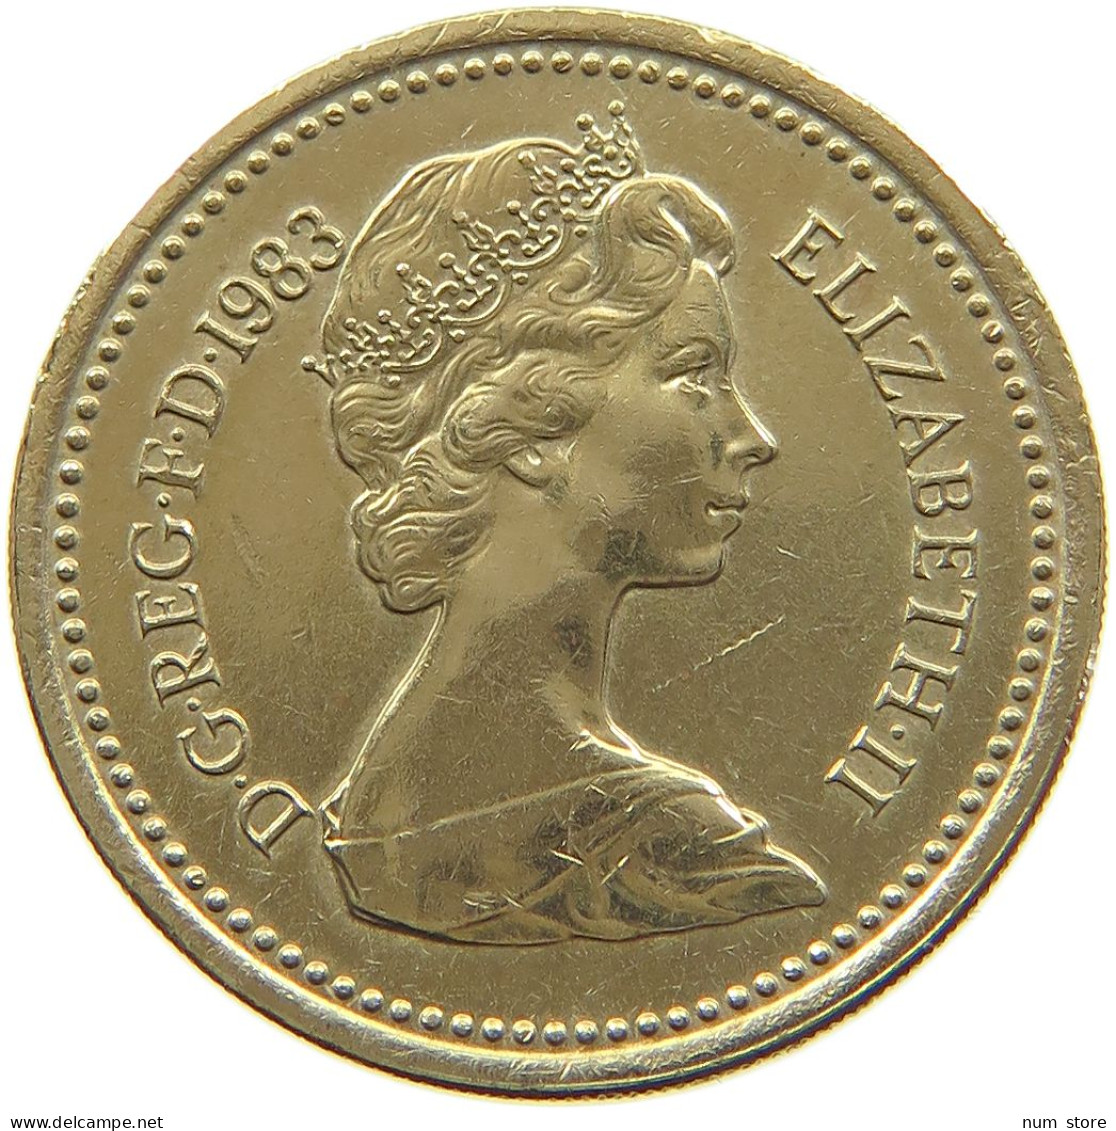 GREAT BRITAIN POUND 1983 Elisabeth II. (1952-) ERROR UPSIDE DOWN DECUS ET TUTAMEN RARE #a047 0339 - 1 Pound